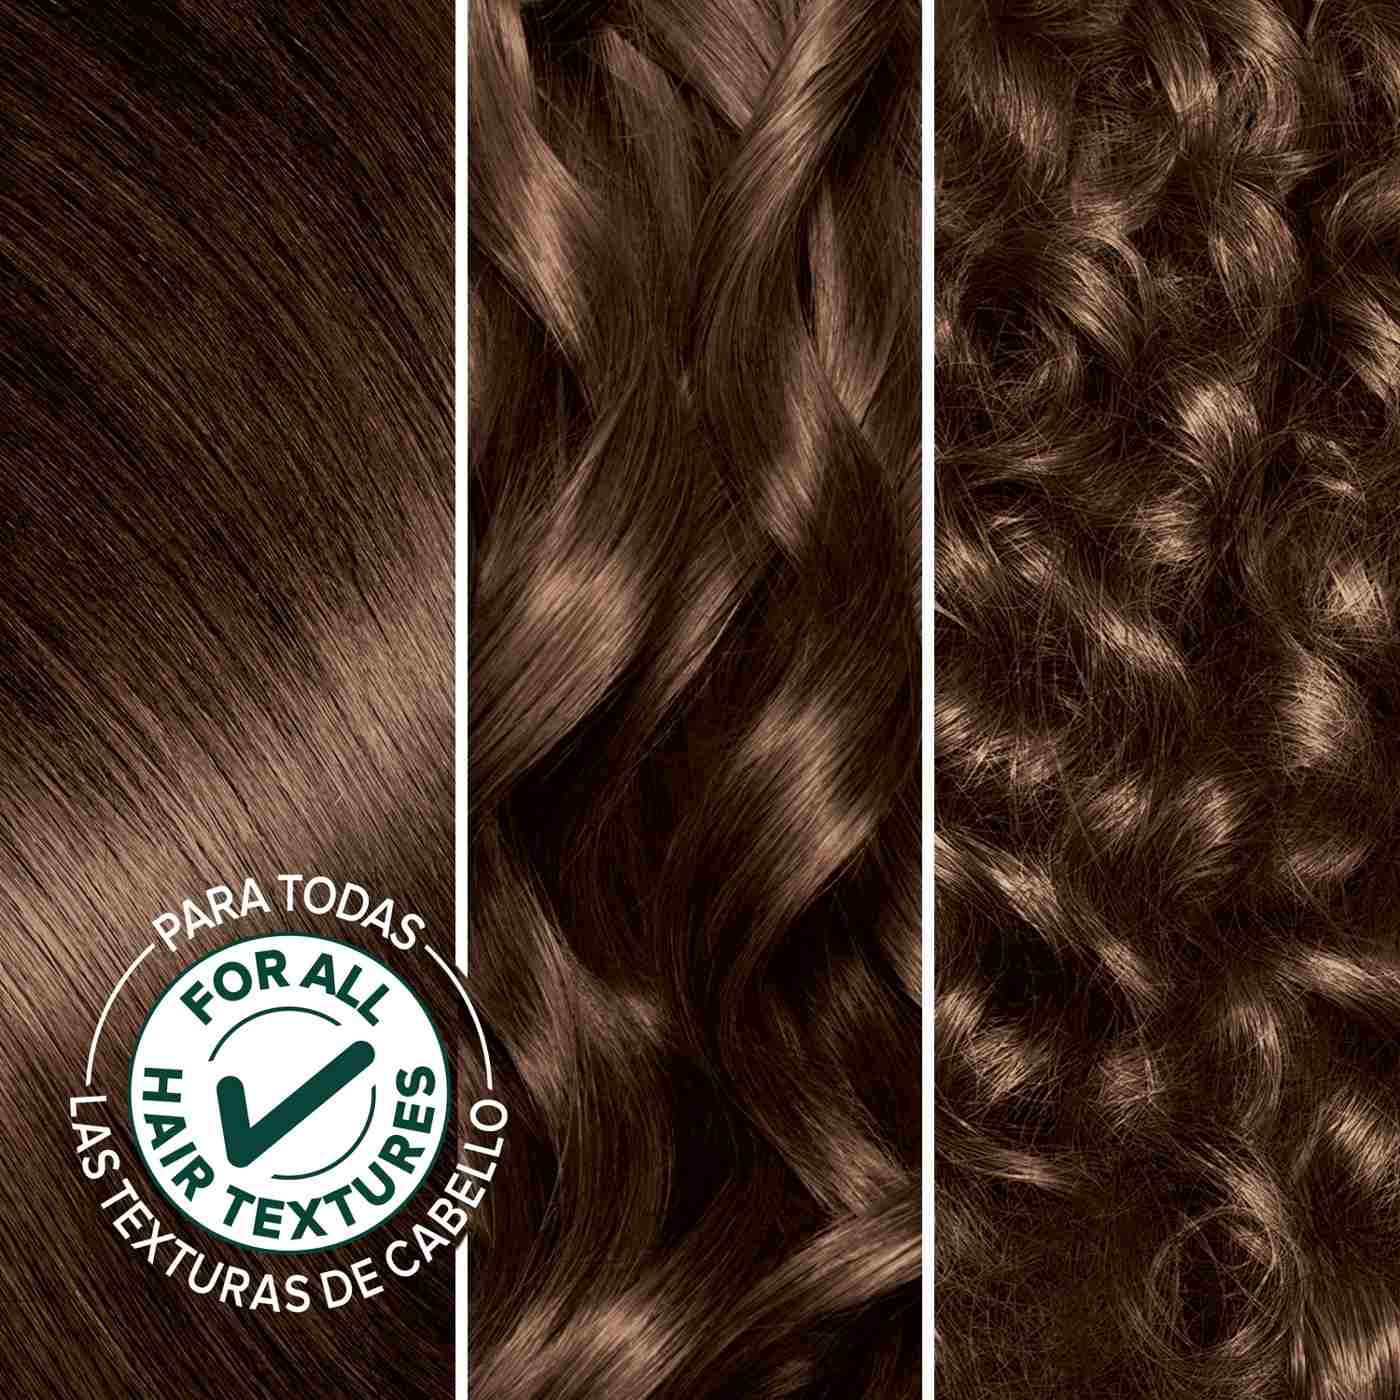 Garnier Nutrisse Nourishing Hair Color Creme - 51 Medium Ash Brown; image 3 of 6